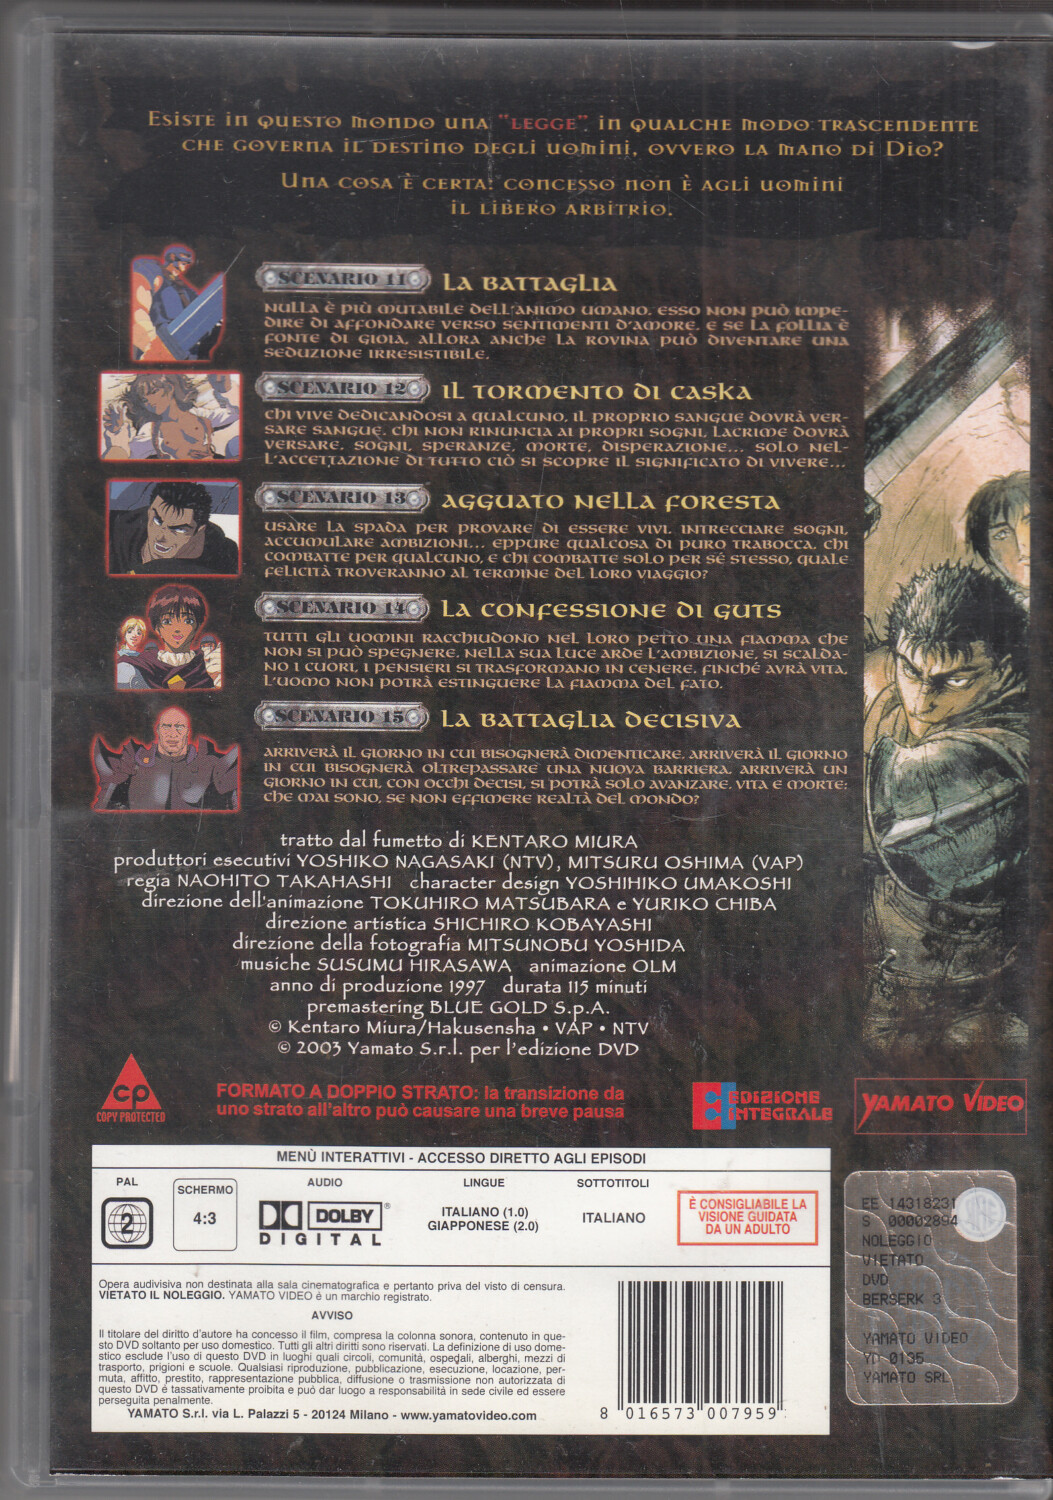 Berserk. Epic 3 (Episodi 11-15). DVD in Italiano – Emporio di milo